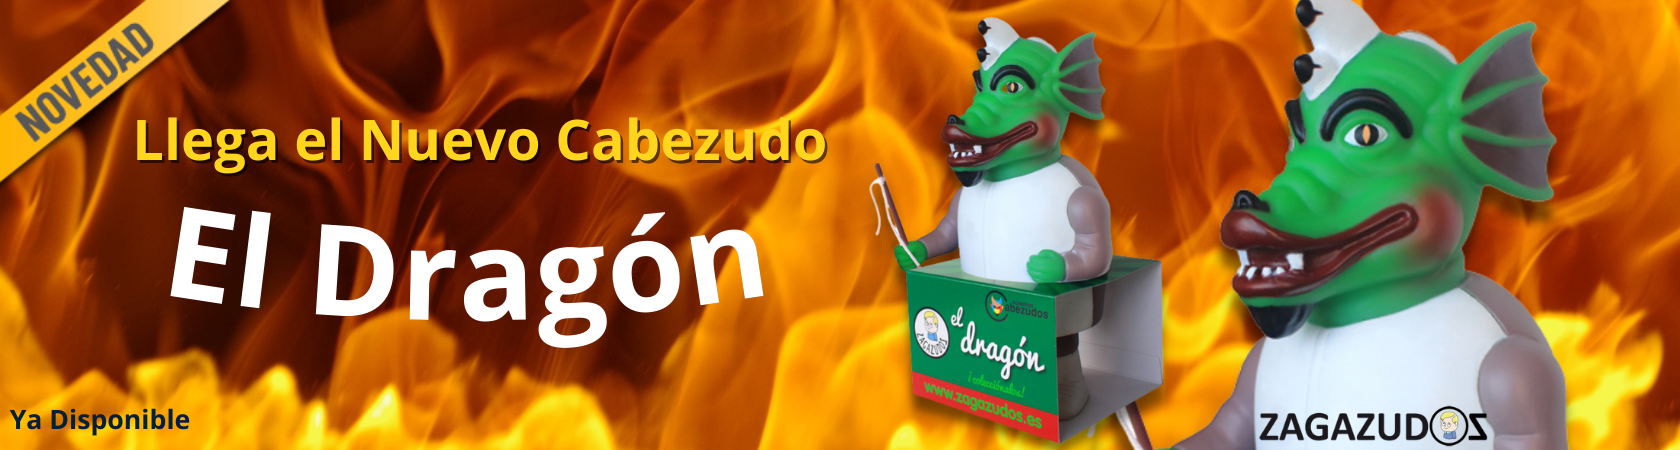 El dragon-banner.png